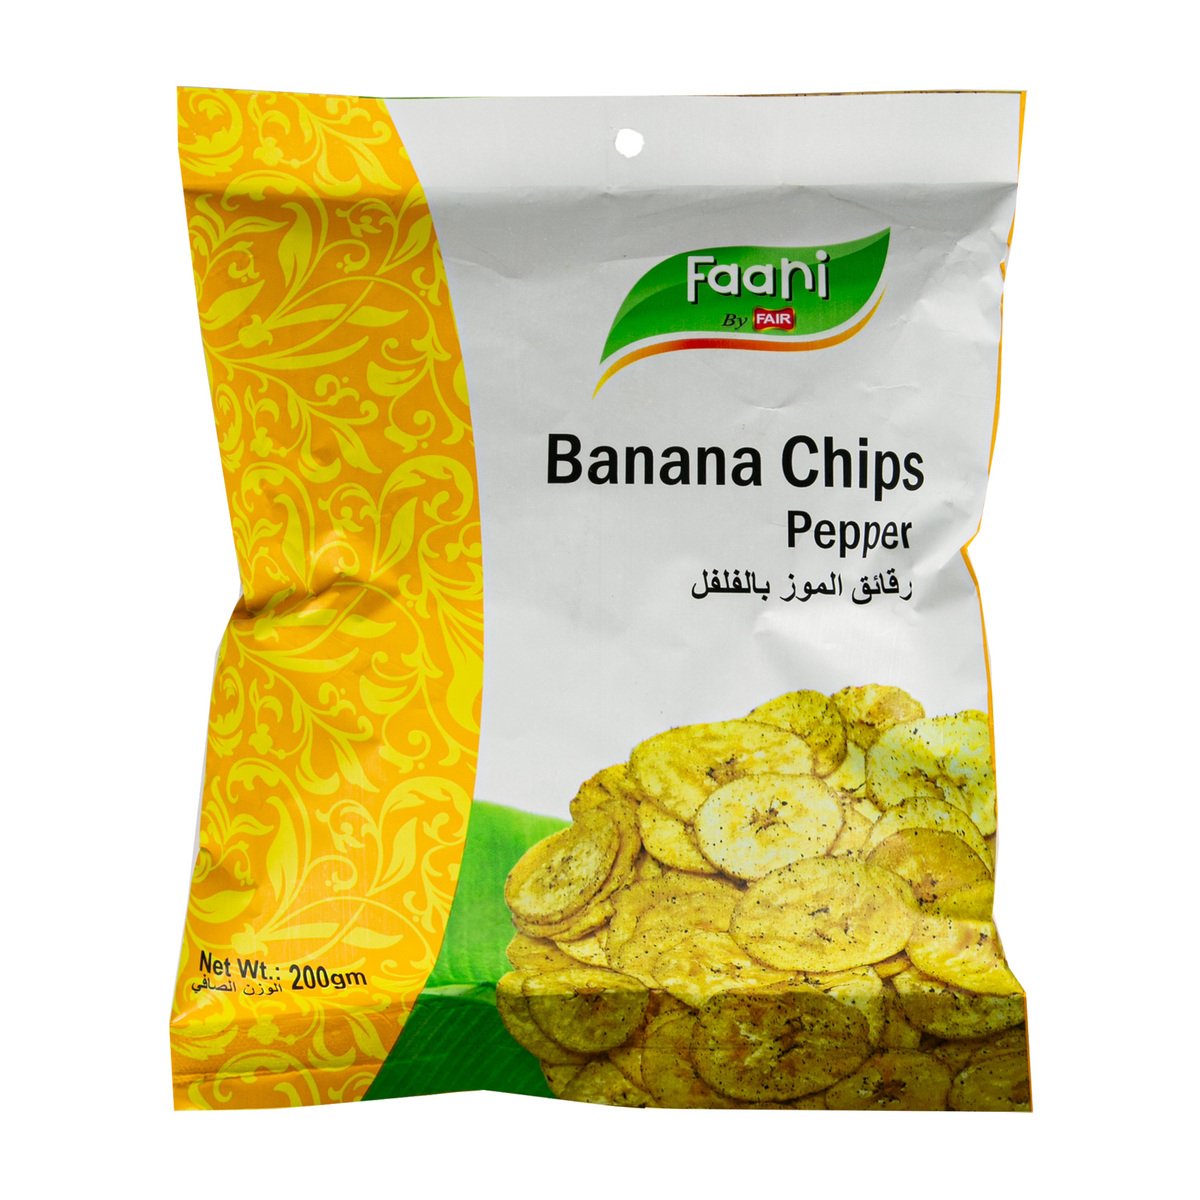 Faani Banana Chips Pepper 200 g